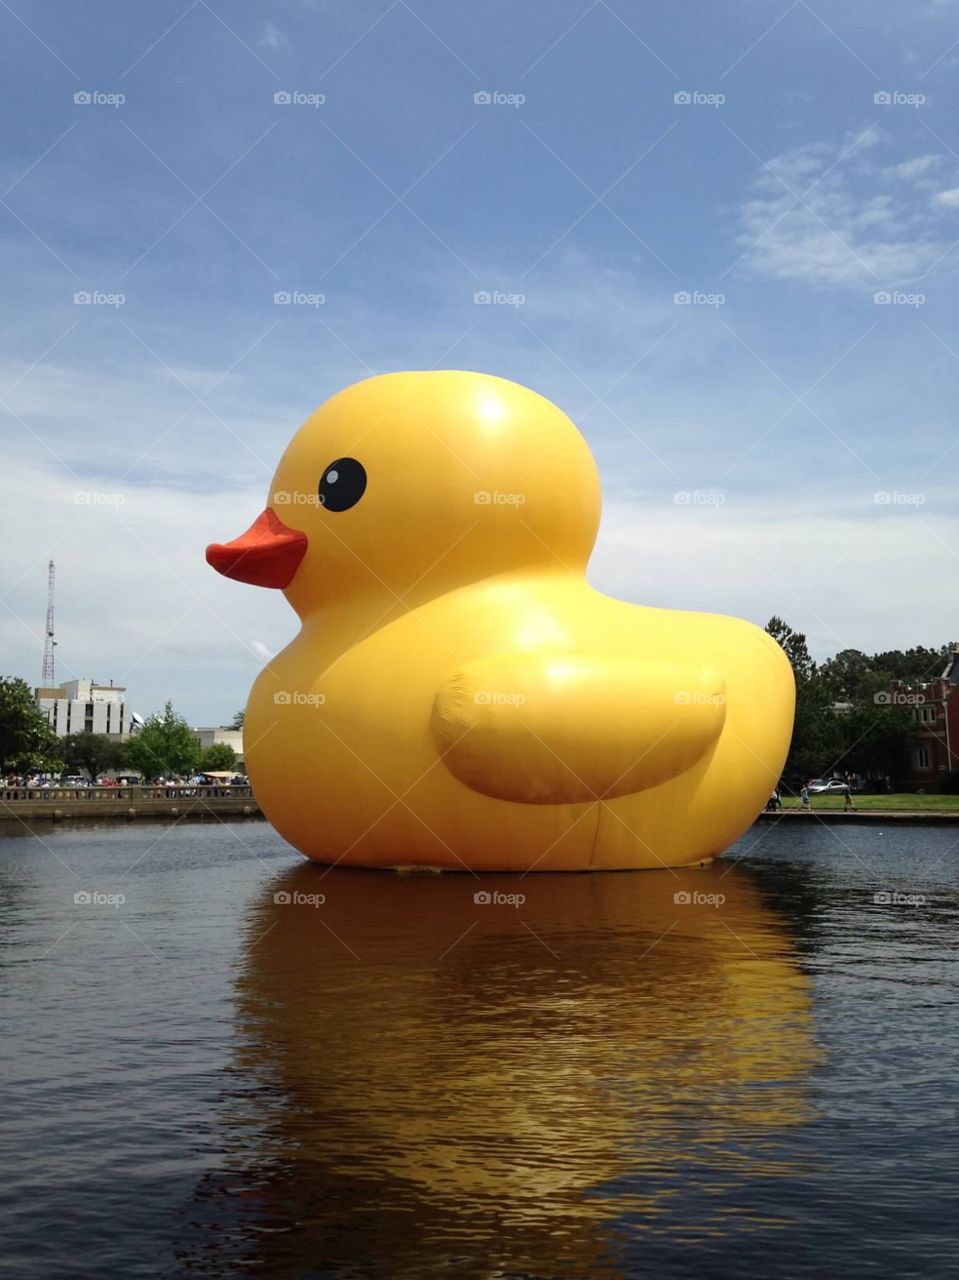 The traveling giant rubber duck - Norfolk, VA